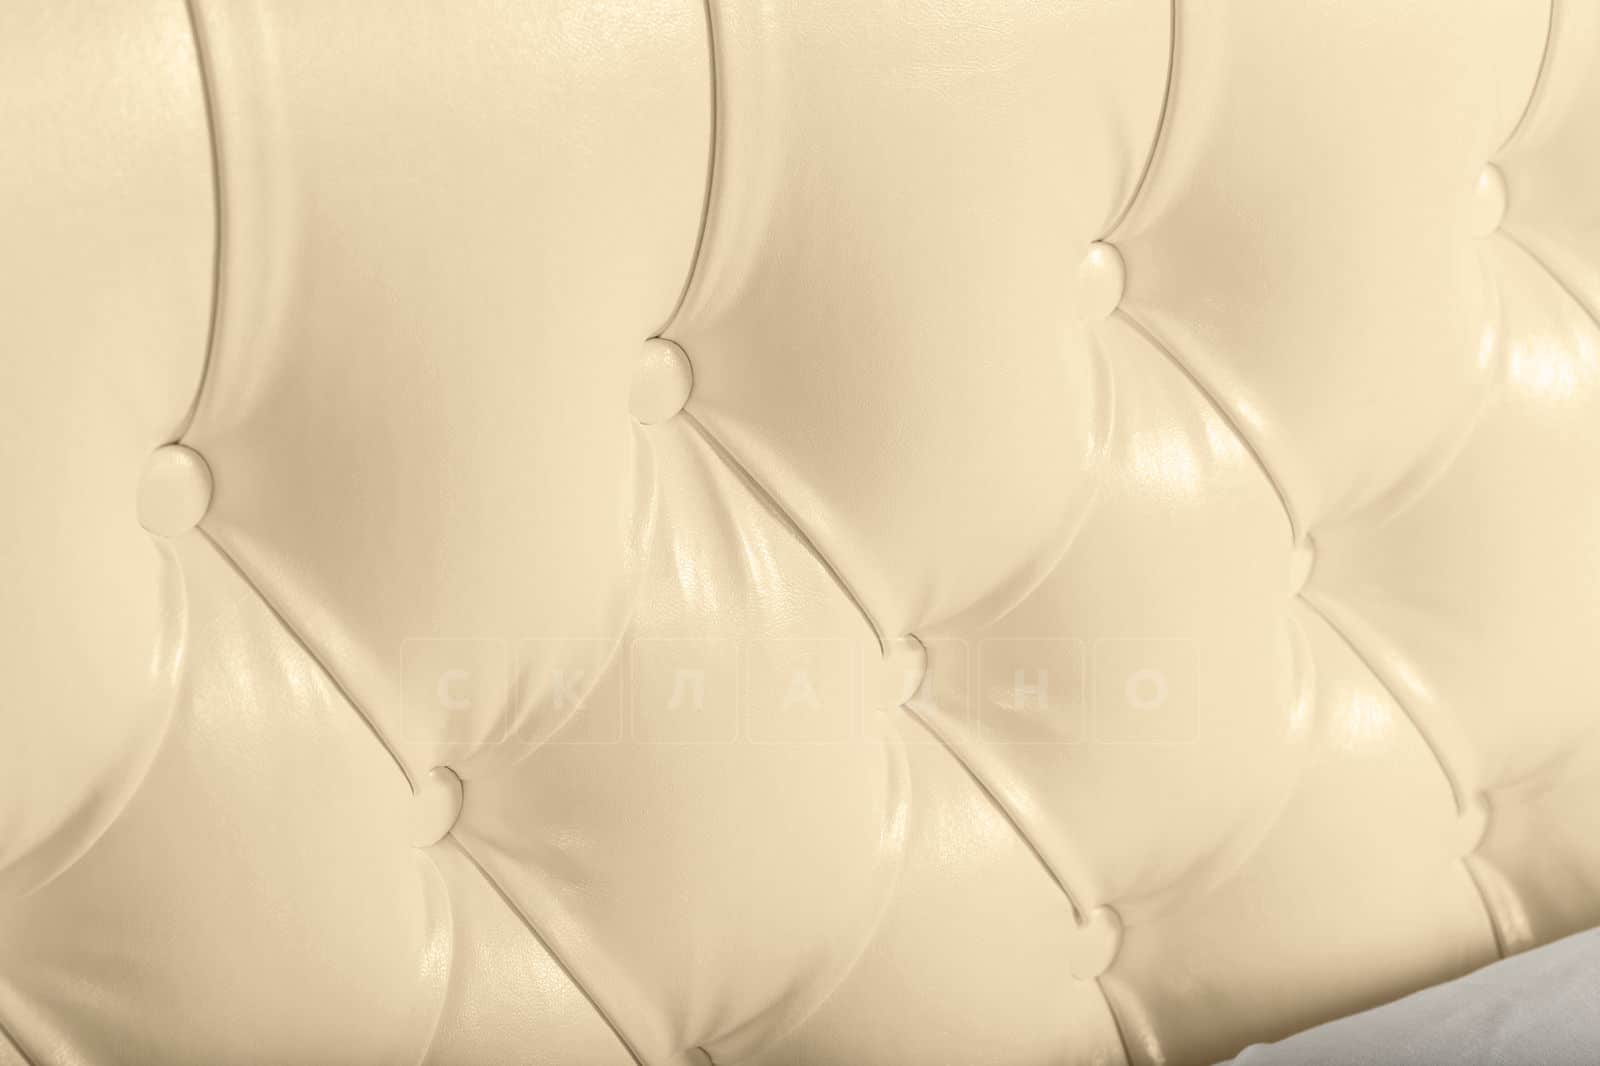 Мягкая кровать Малибу 160см экокожа бежевого цвета вариант 1-2 фото 8 | интернет-магазин Складно